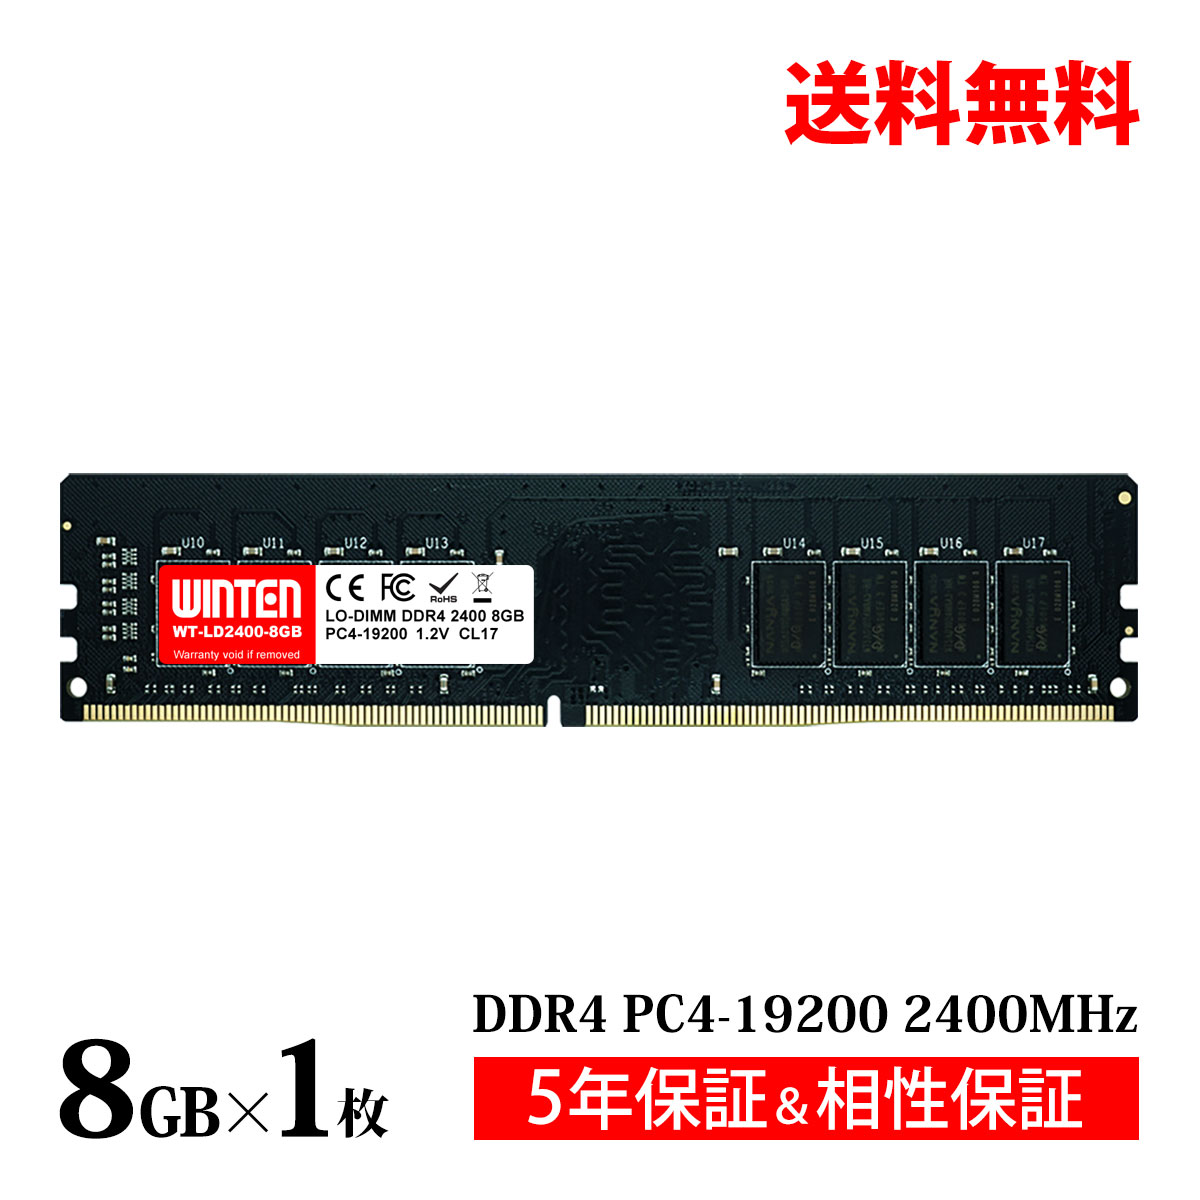 デスクトップPC用 メモリ 8GB PC4-19200 DDR4 2400 WT-LD2400-8GB【相性保証 製品5年保証 送料無料 即日出荷】DDR4 SDRAM DIMM 内蔵メモリー 増設メモリー 5603